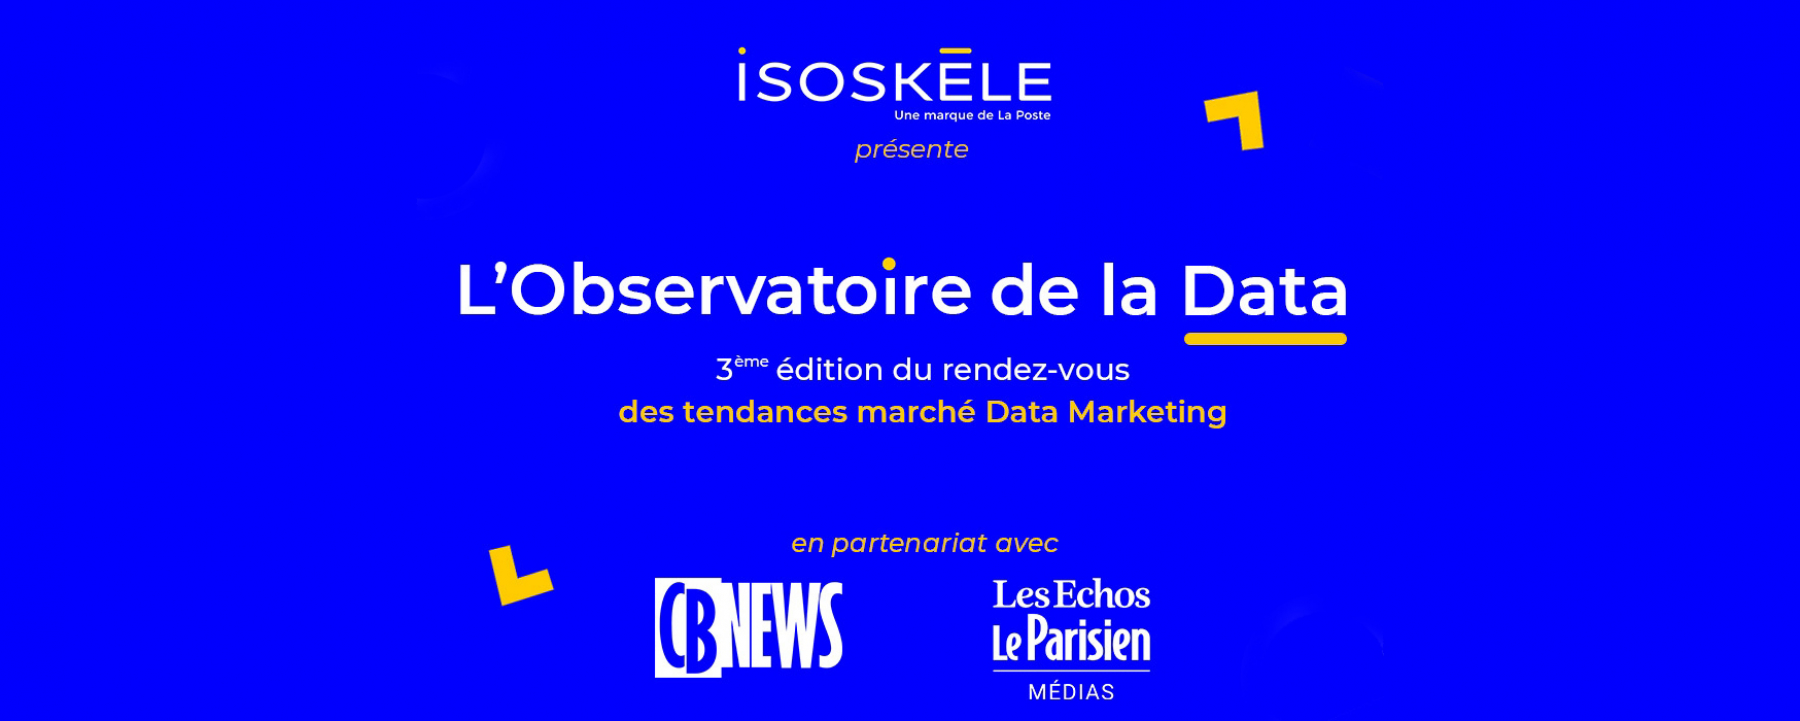 Conférence Observatoire de la Data - 3e Édition organisée par Isoskele